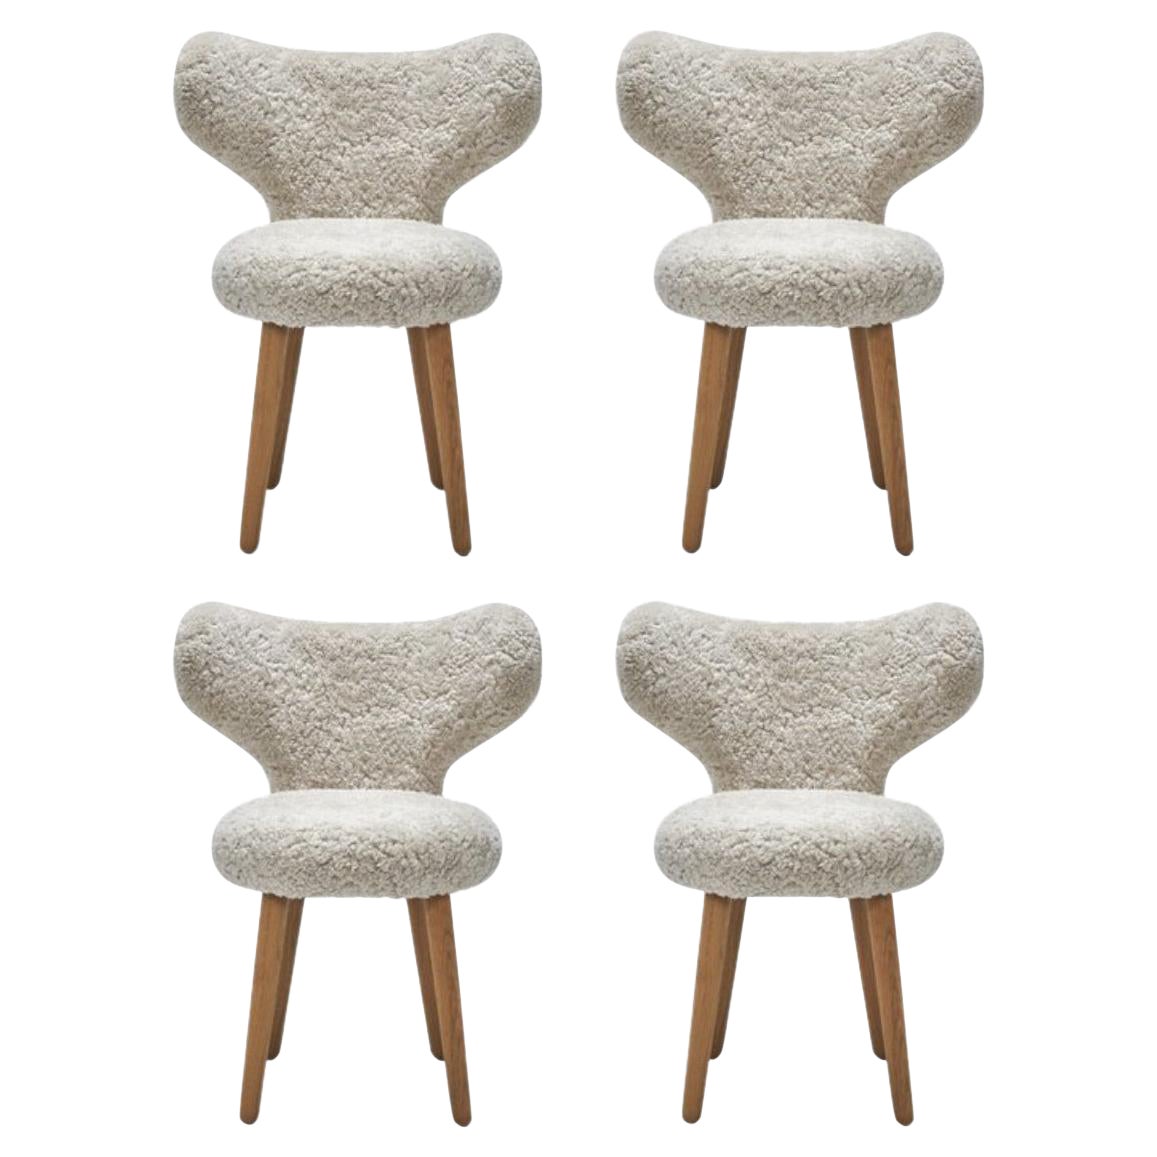 Set of 4 Sheepskin Wng Chairs by Mazo Design